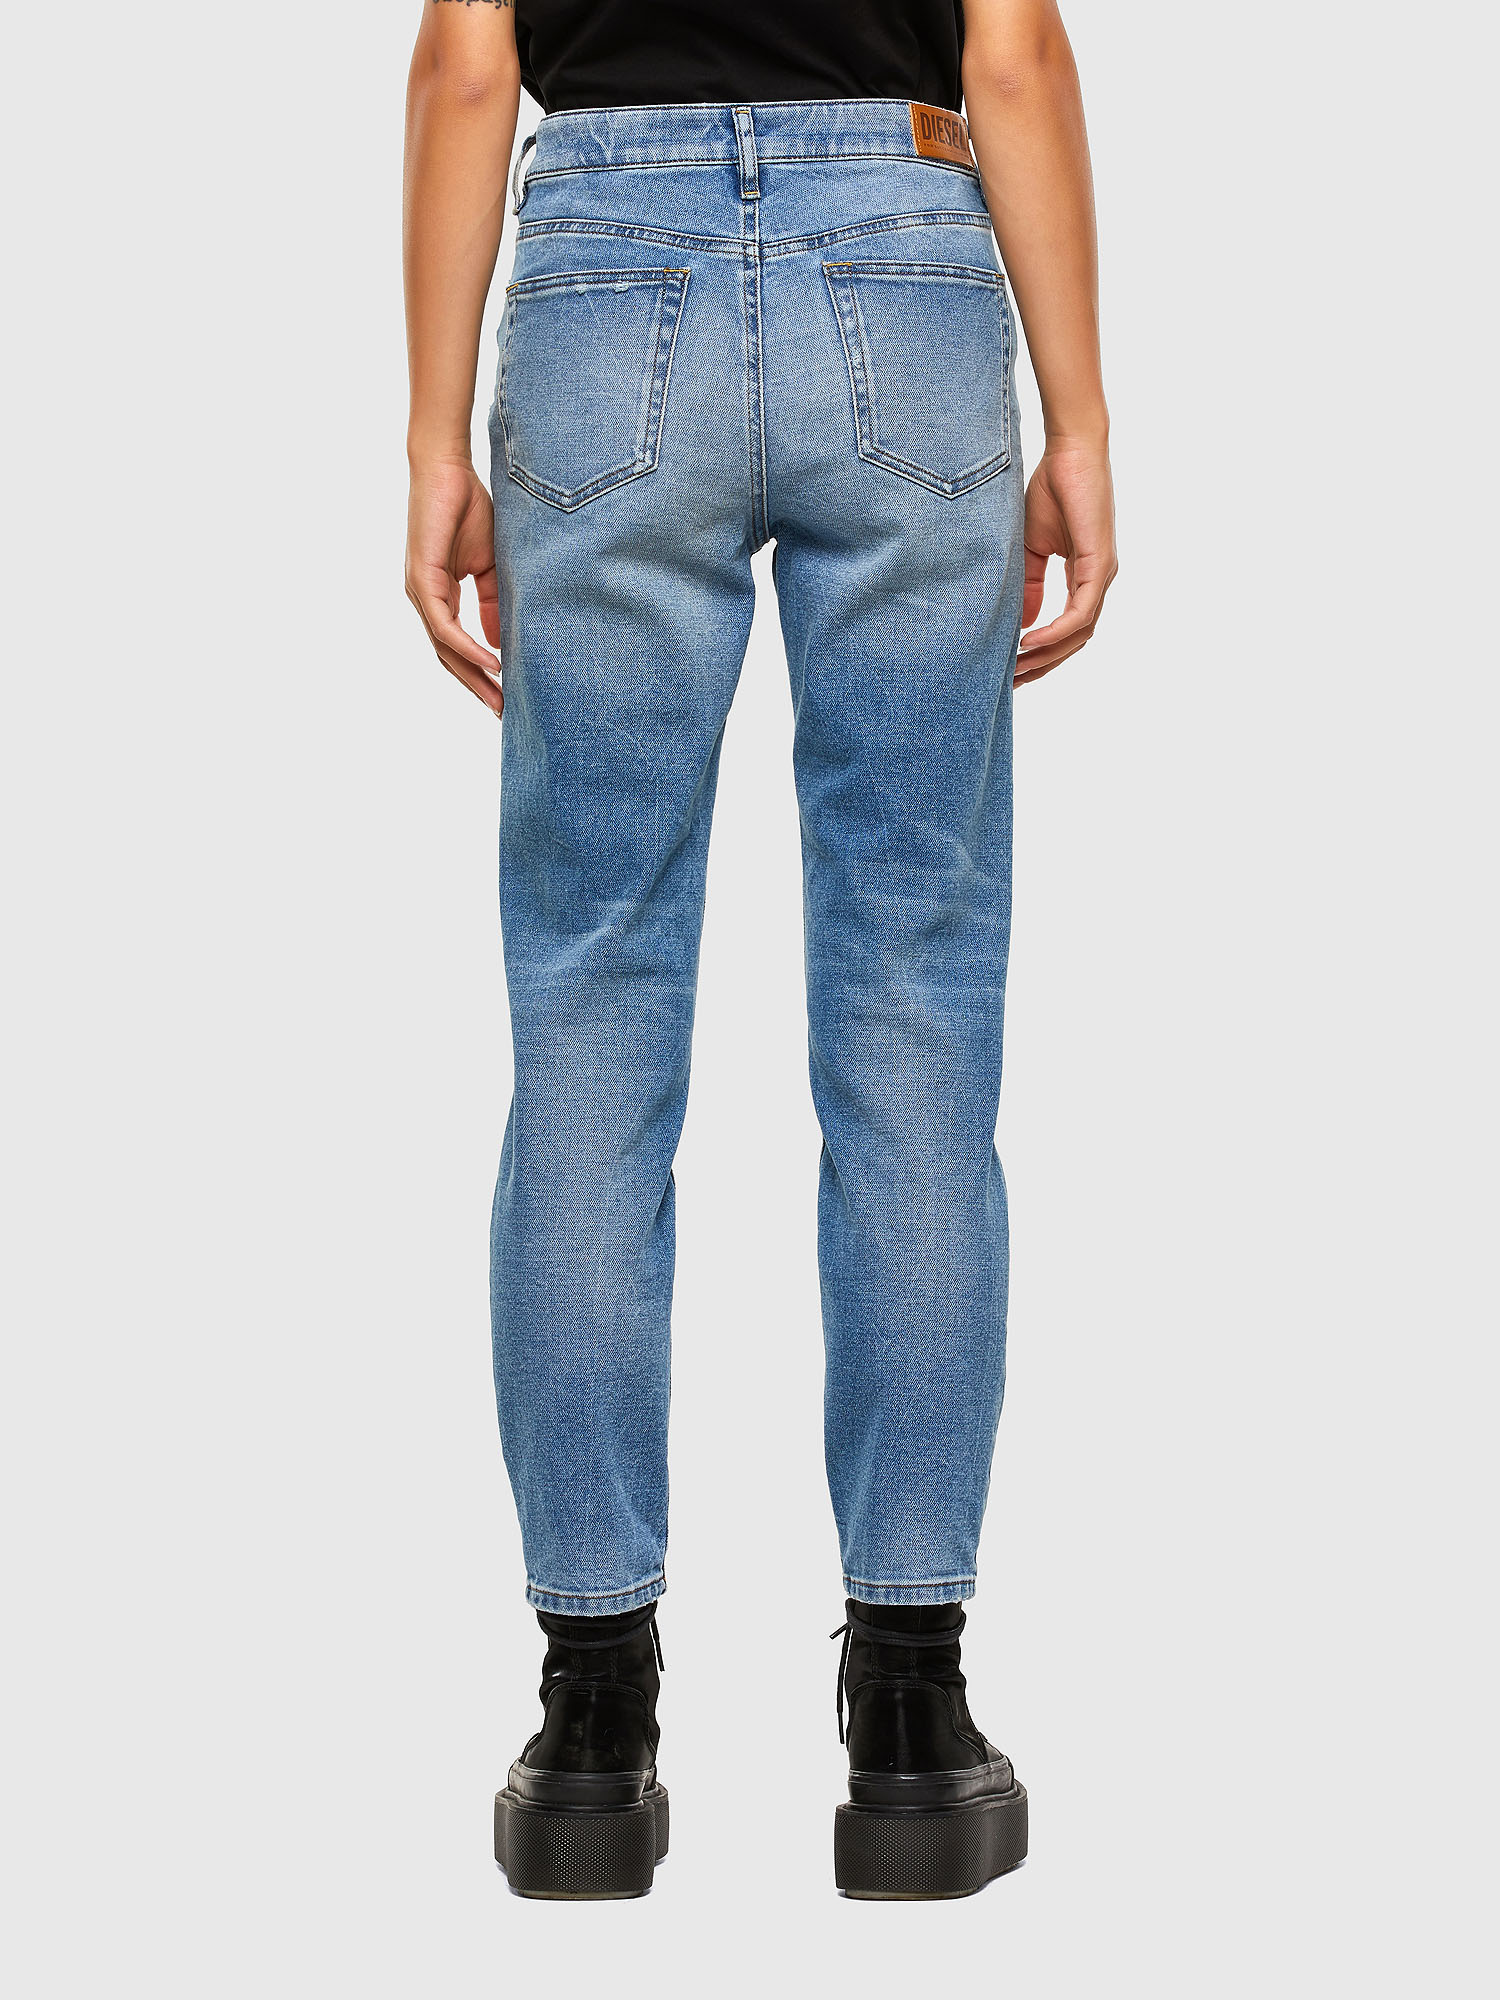 Diesel - D-Joy 009EU Slim Jeans,  - Image 3